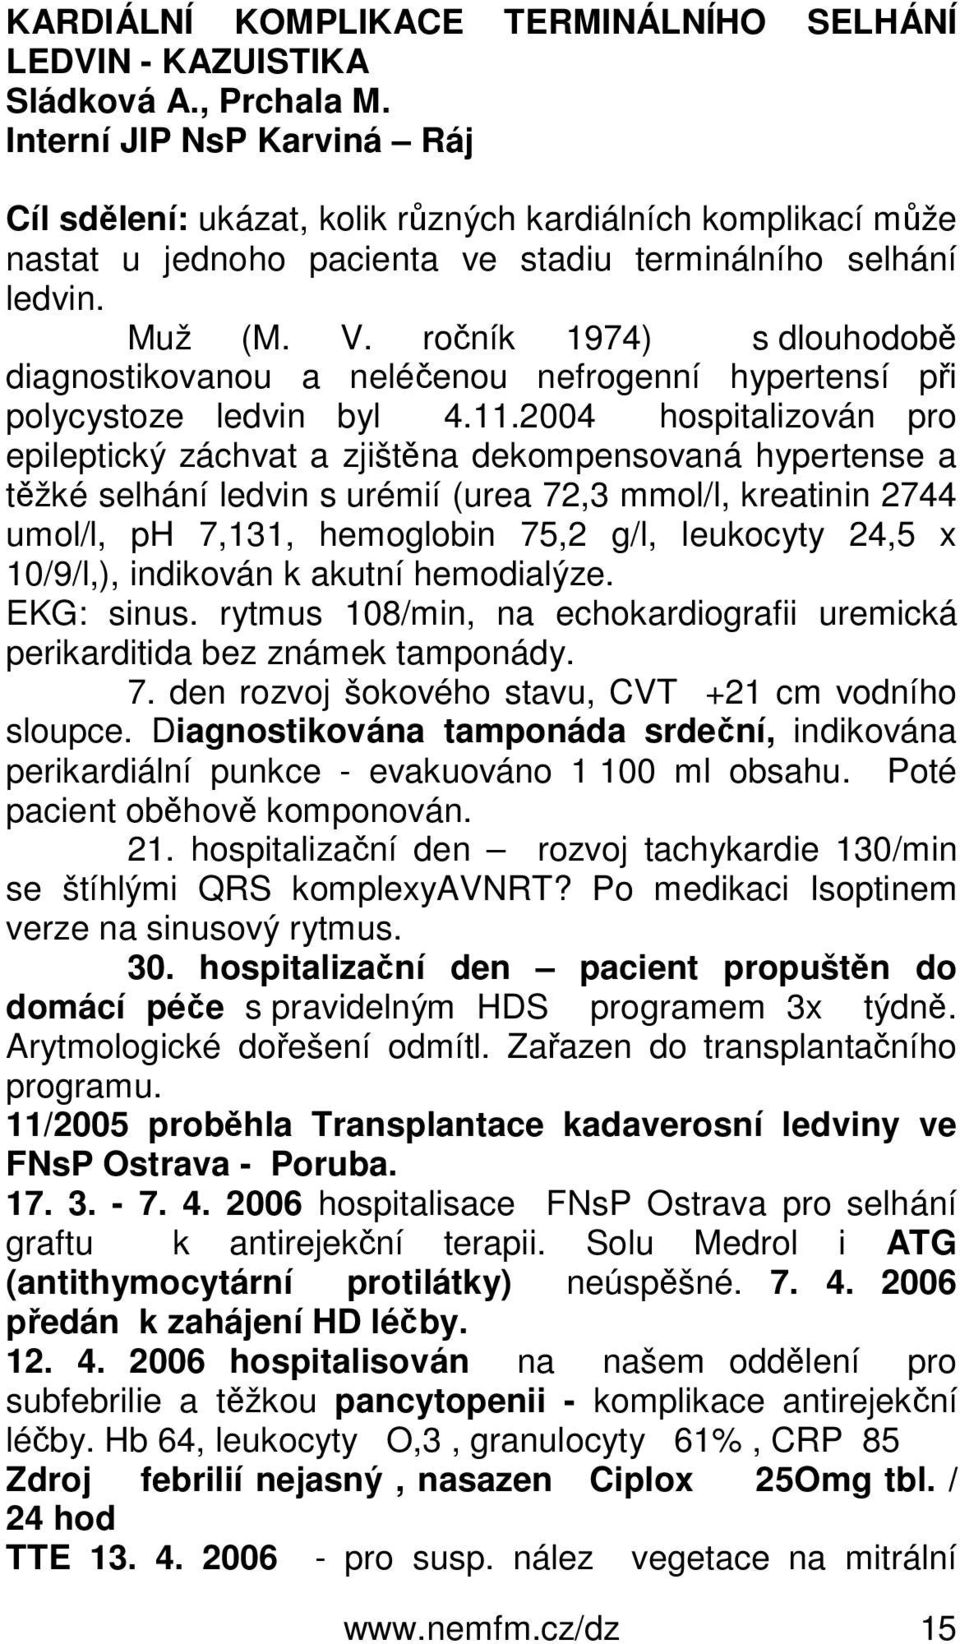 ročník 1974) s dlouhodobě diagnostikovanou a neléčenou nefrogenní hypertensí při polycystoze ledvin byl 4.11.